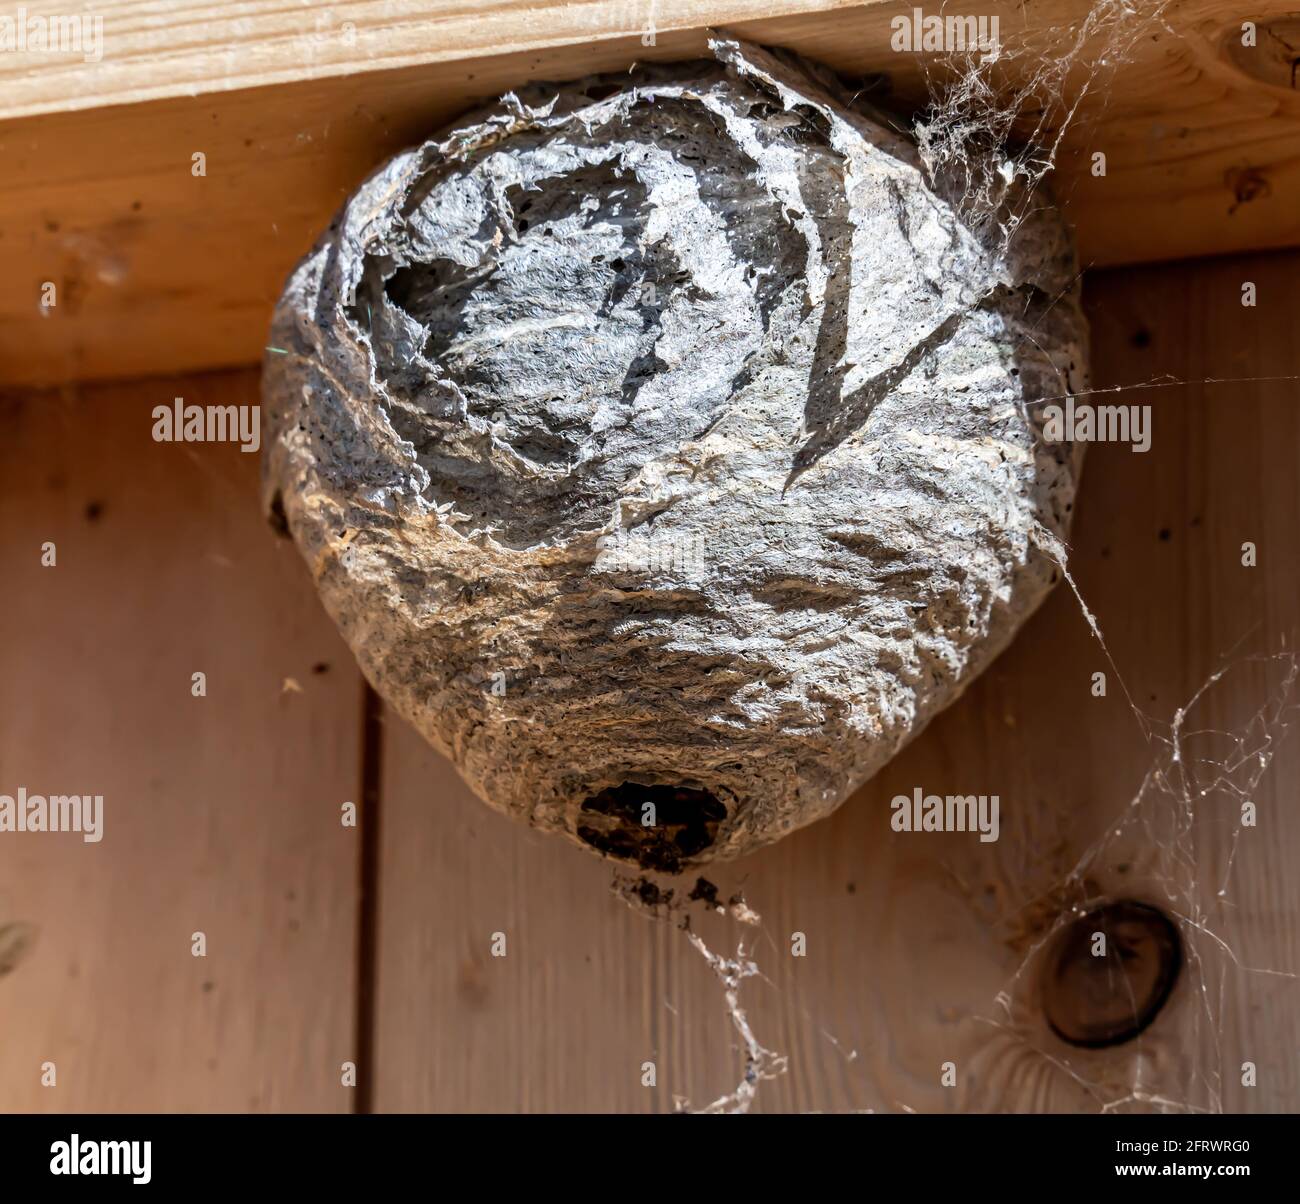 Le vespe Hornet nidificano sul telaio interno di una parete della casa. Lavoro di controllo dei parassiti. Foto Stock